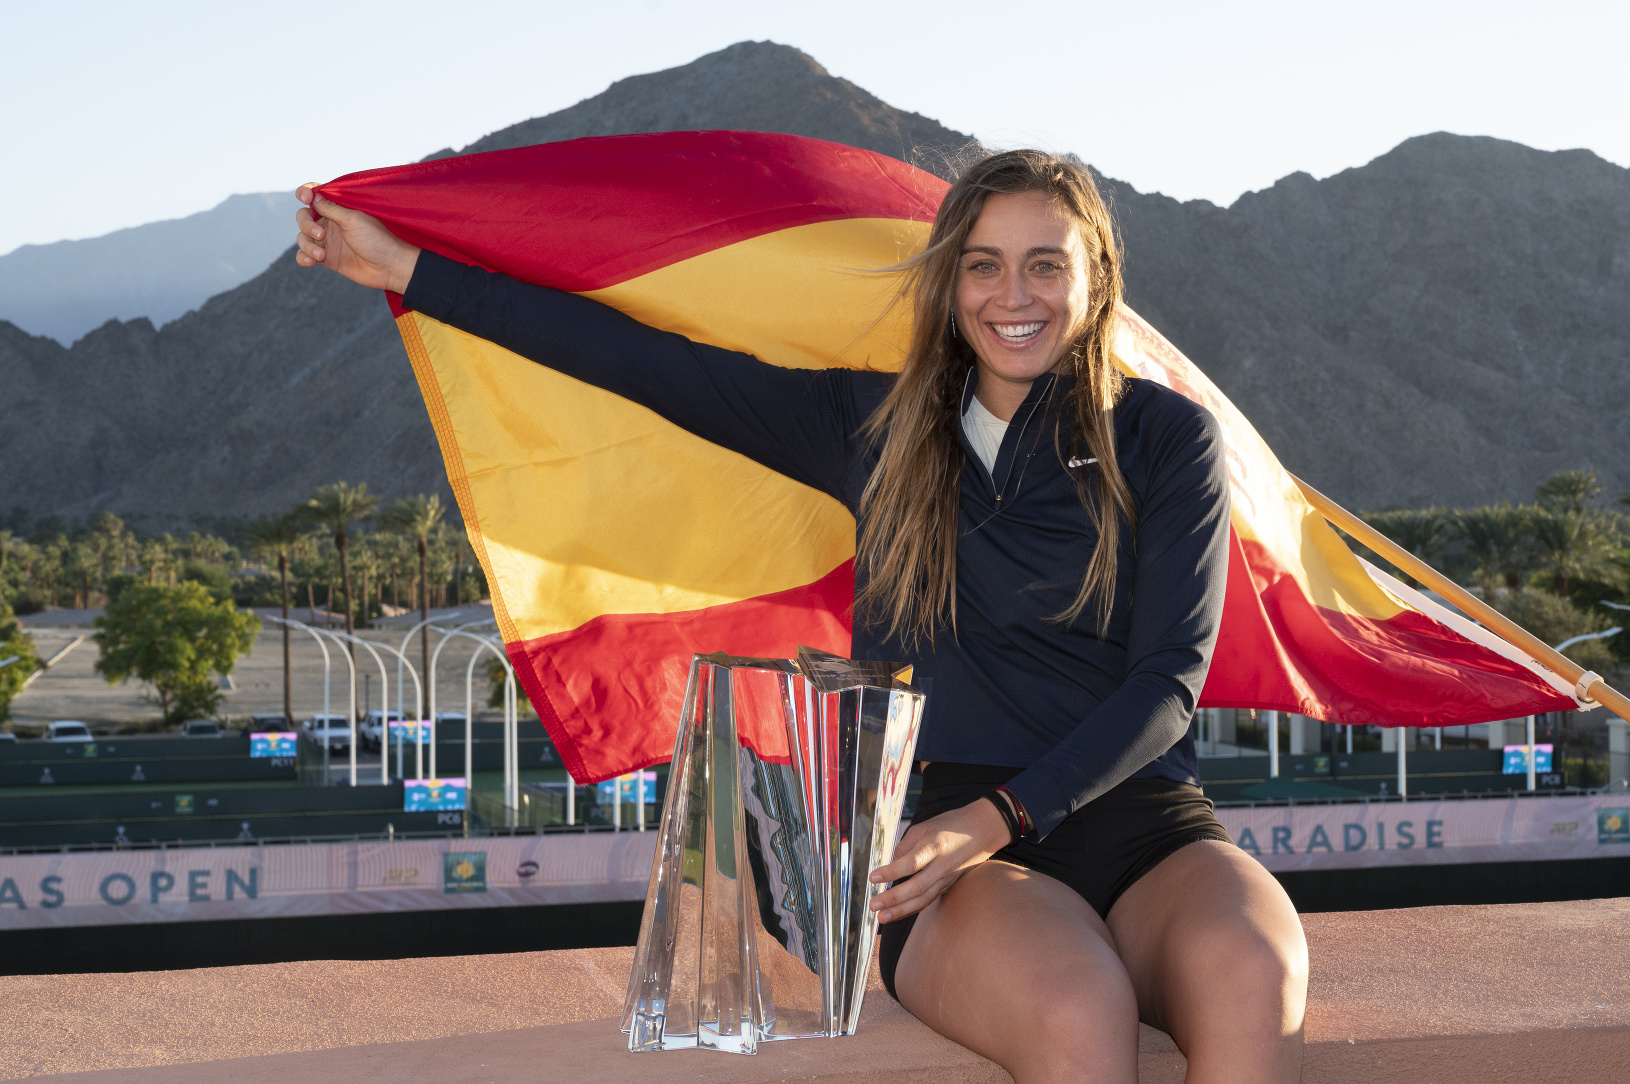 Španielska tenistka Paula Badosová